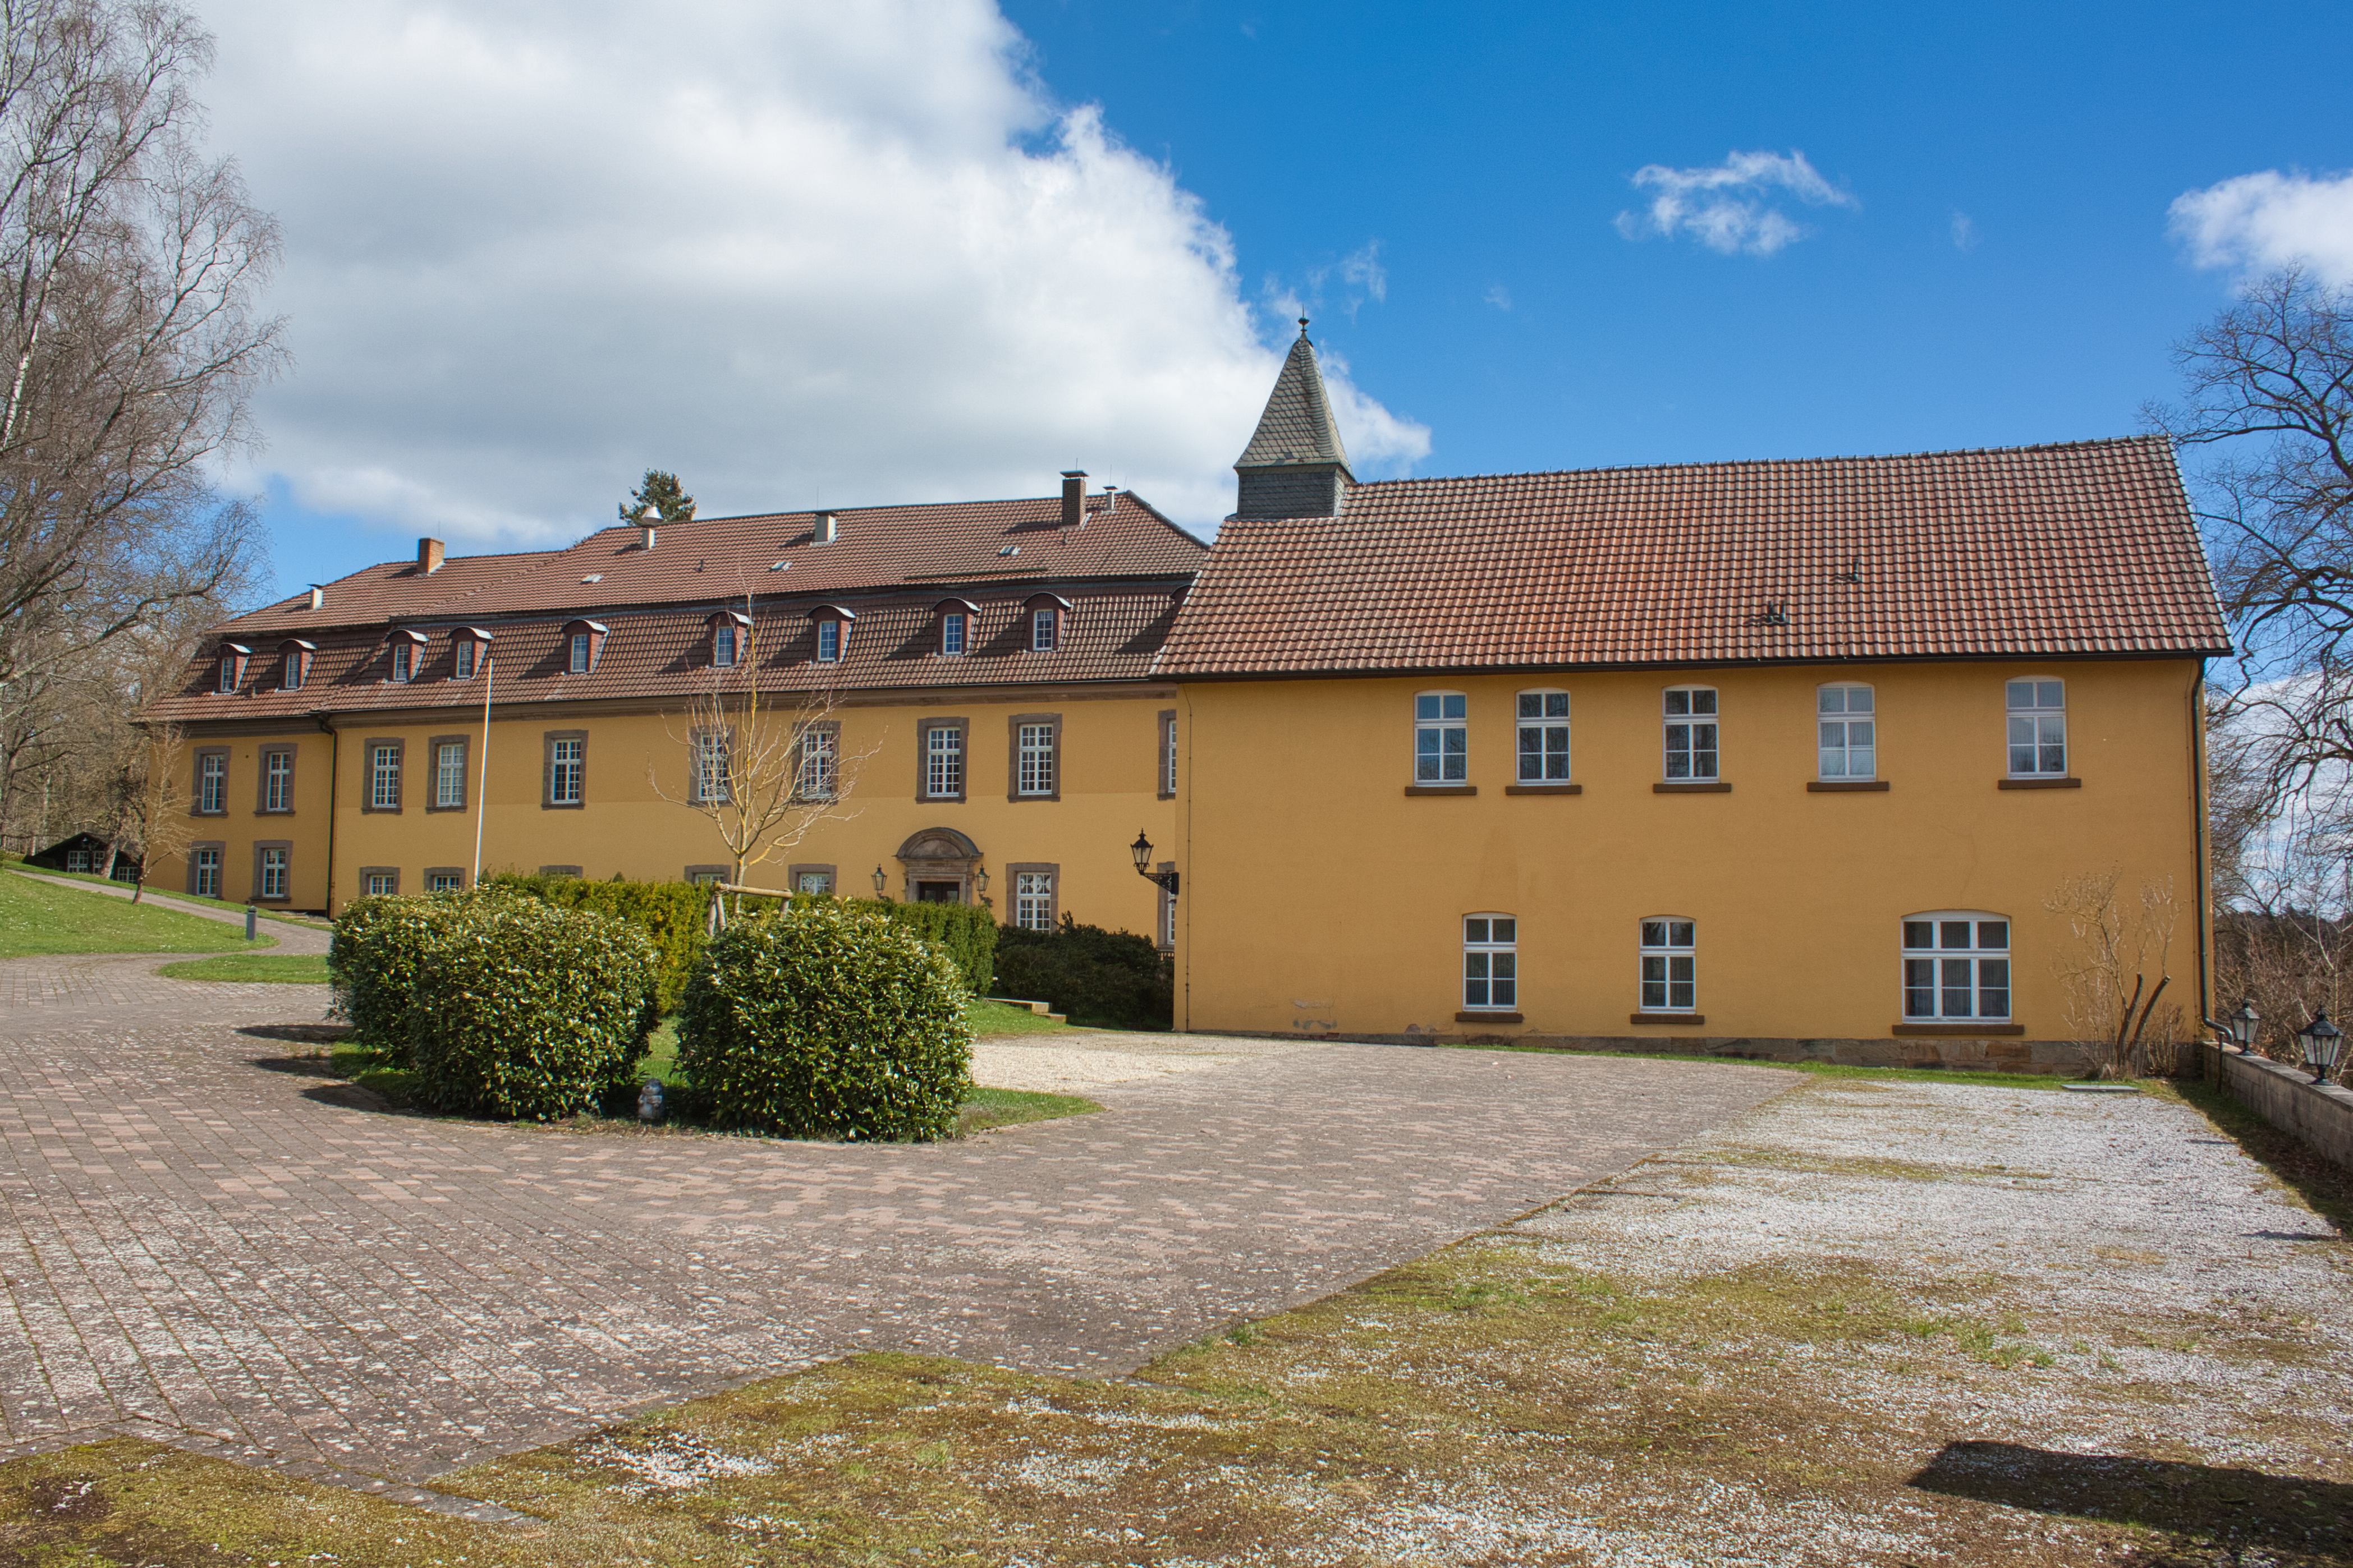 Hotel Schloss Höhnscheid mit dem Haus Eulenburg in Bad Arolsen.
